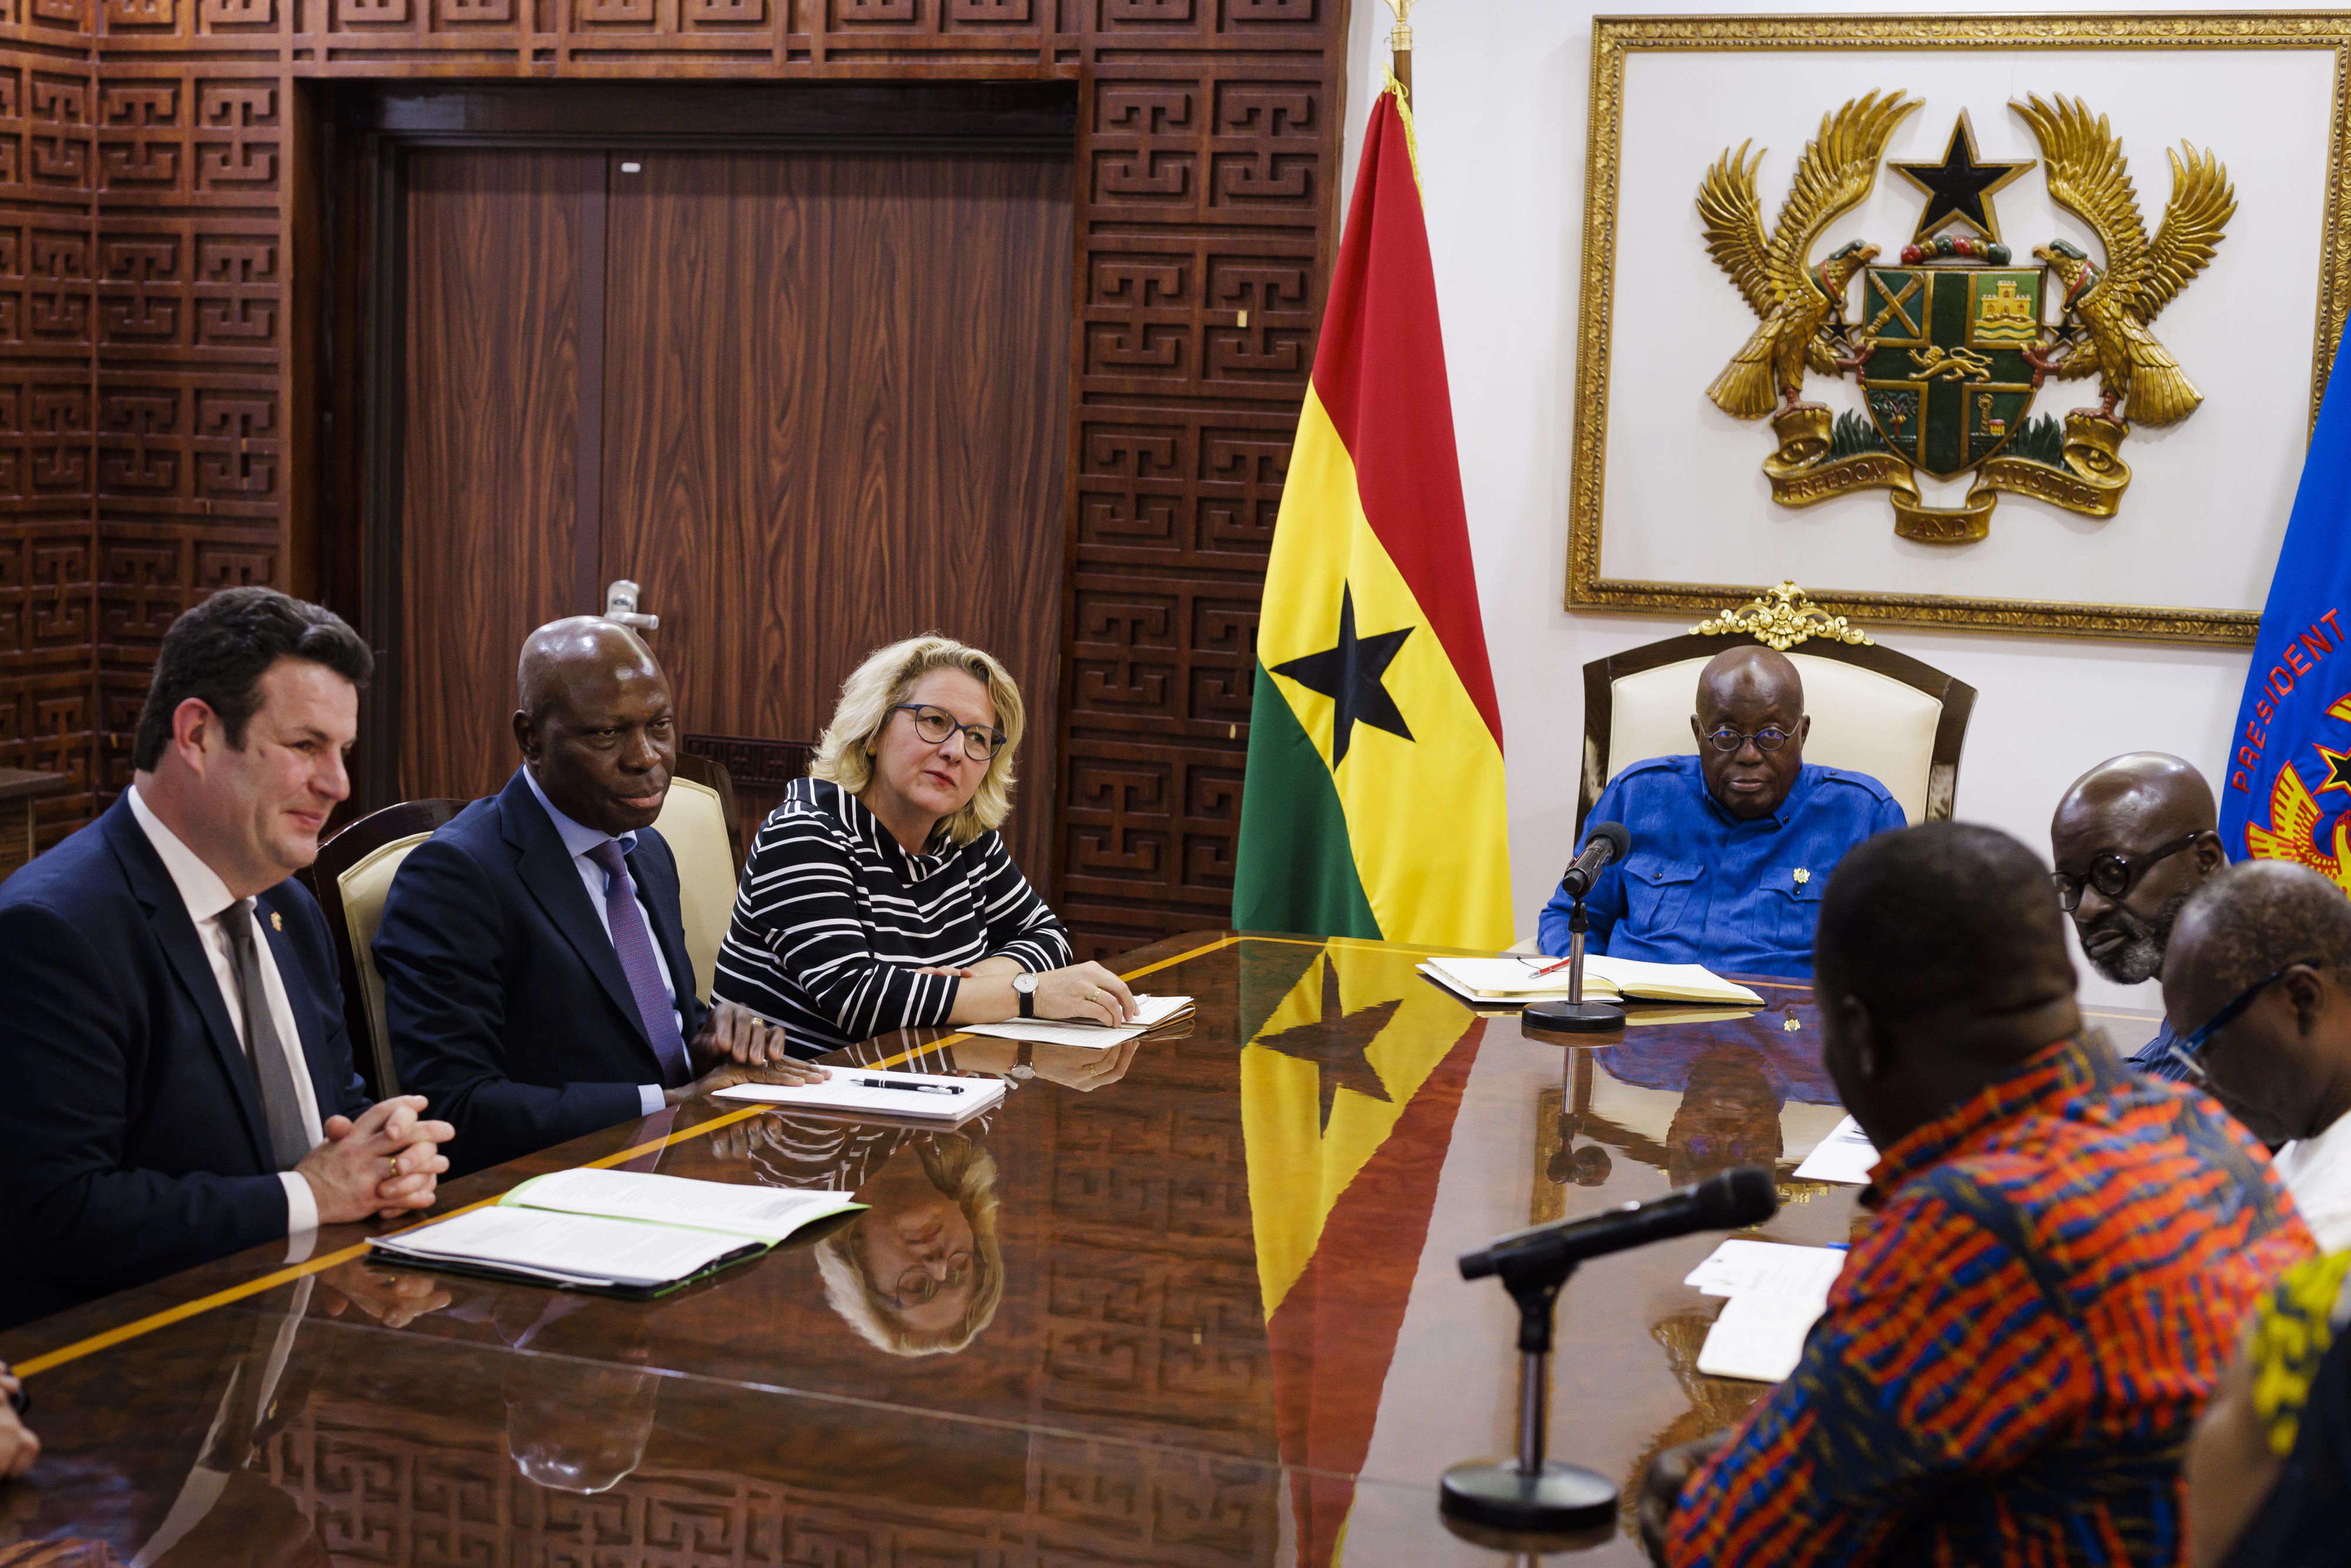 De gauche à droite : Le ministre fédéral du Travail Hubertus Heil, le directeur général de l'Organisation internationale du Travail (OIT) Gilbert Houngbo, et la ministre fédérale du Développement Svenja Schulze, pendant leur rencontre avec le président ghanéen Nana Akufo-Addo à Accra, Ghana.